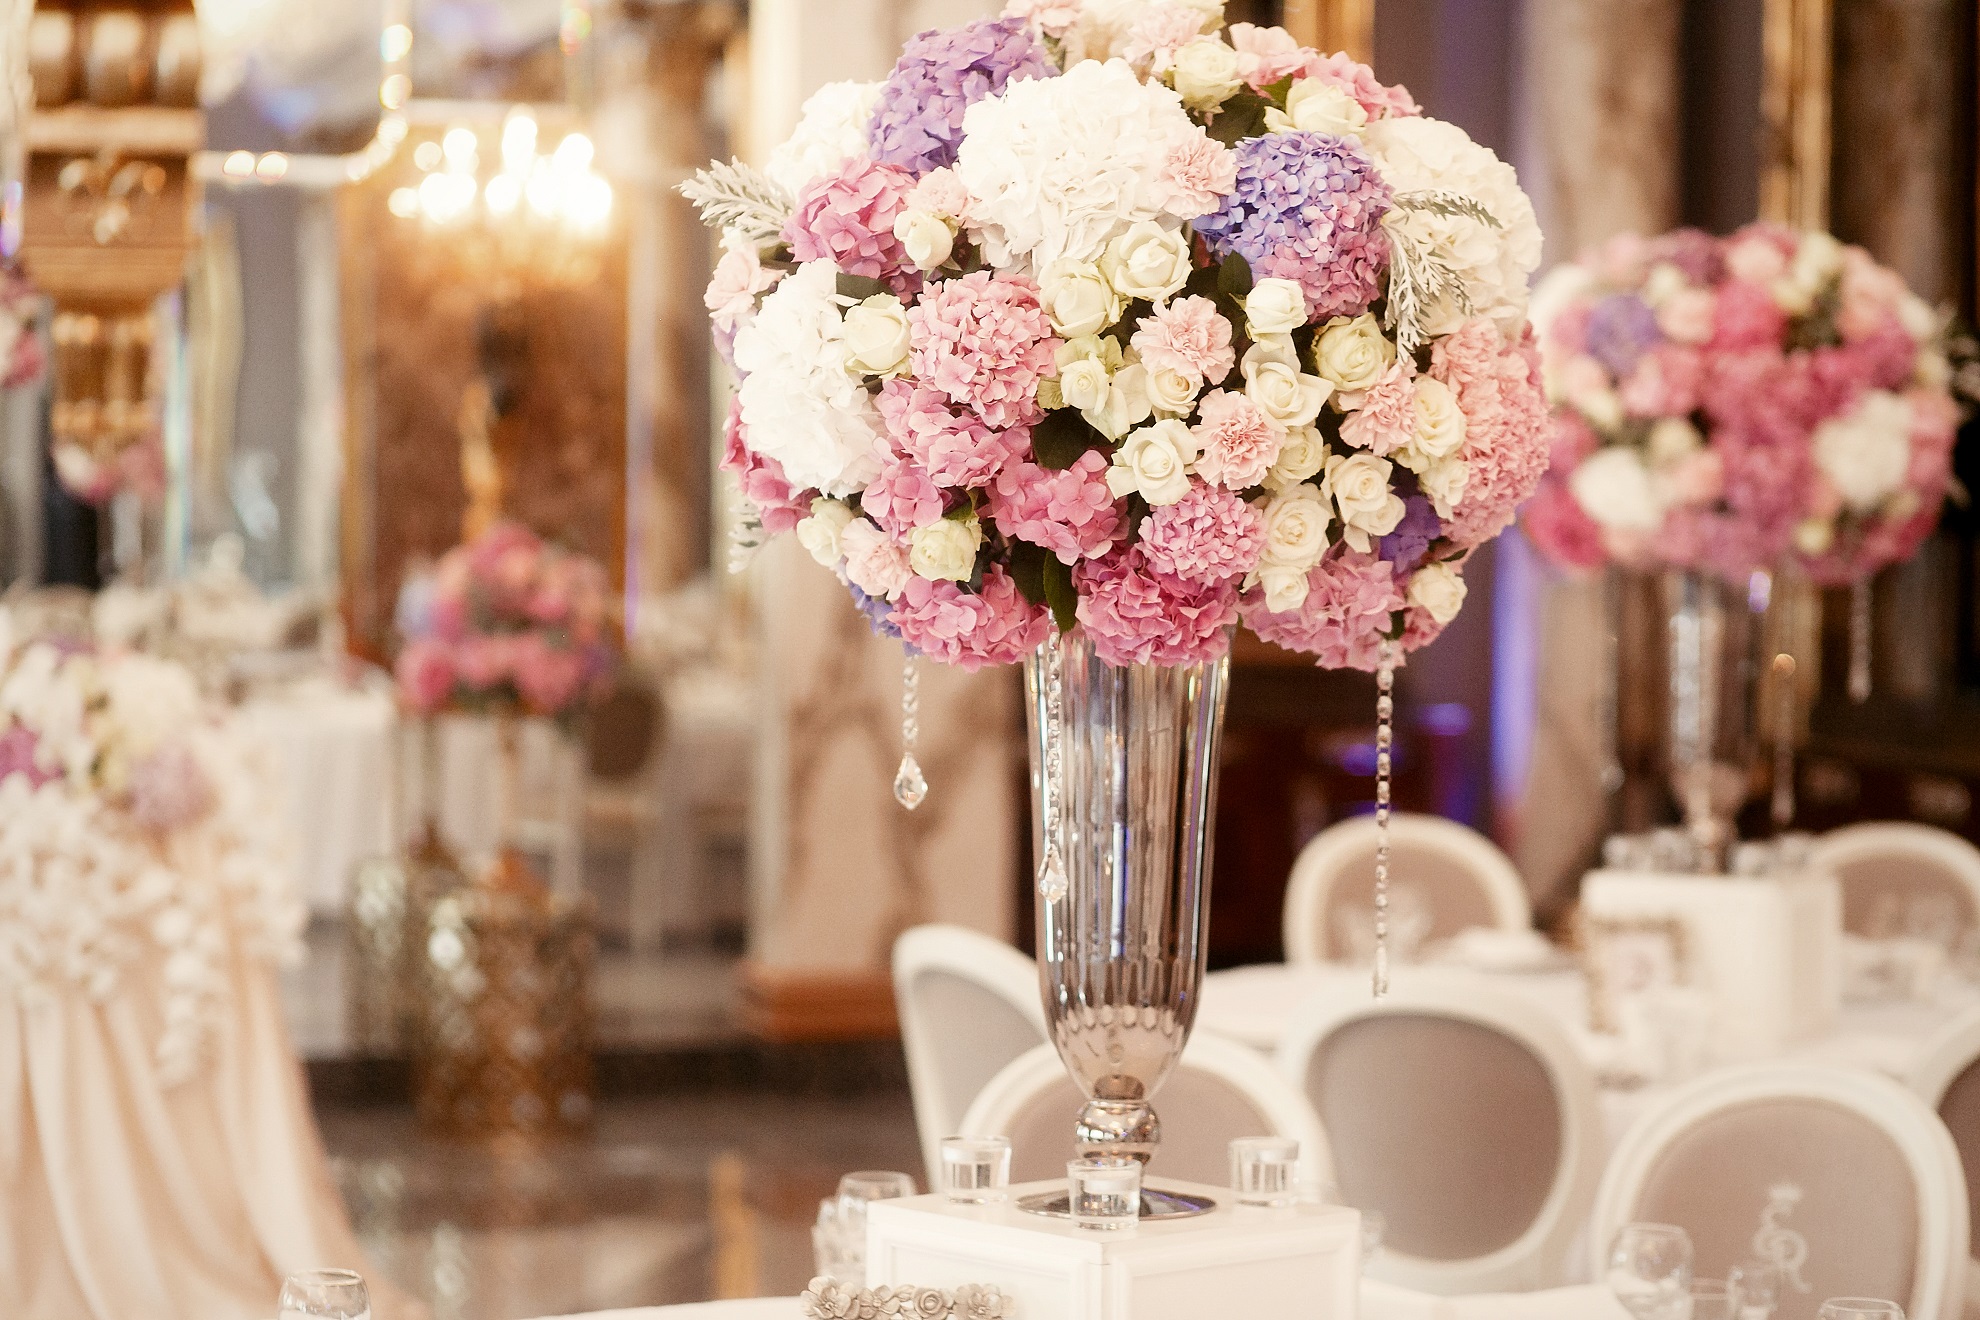 「装花」が結婚式の雰囲気を決める!?フラワーコーディネーターが教える装花選び3つのポイント ウェディングメディアmarrial